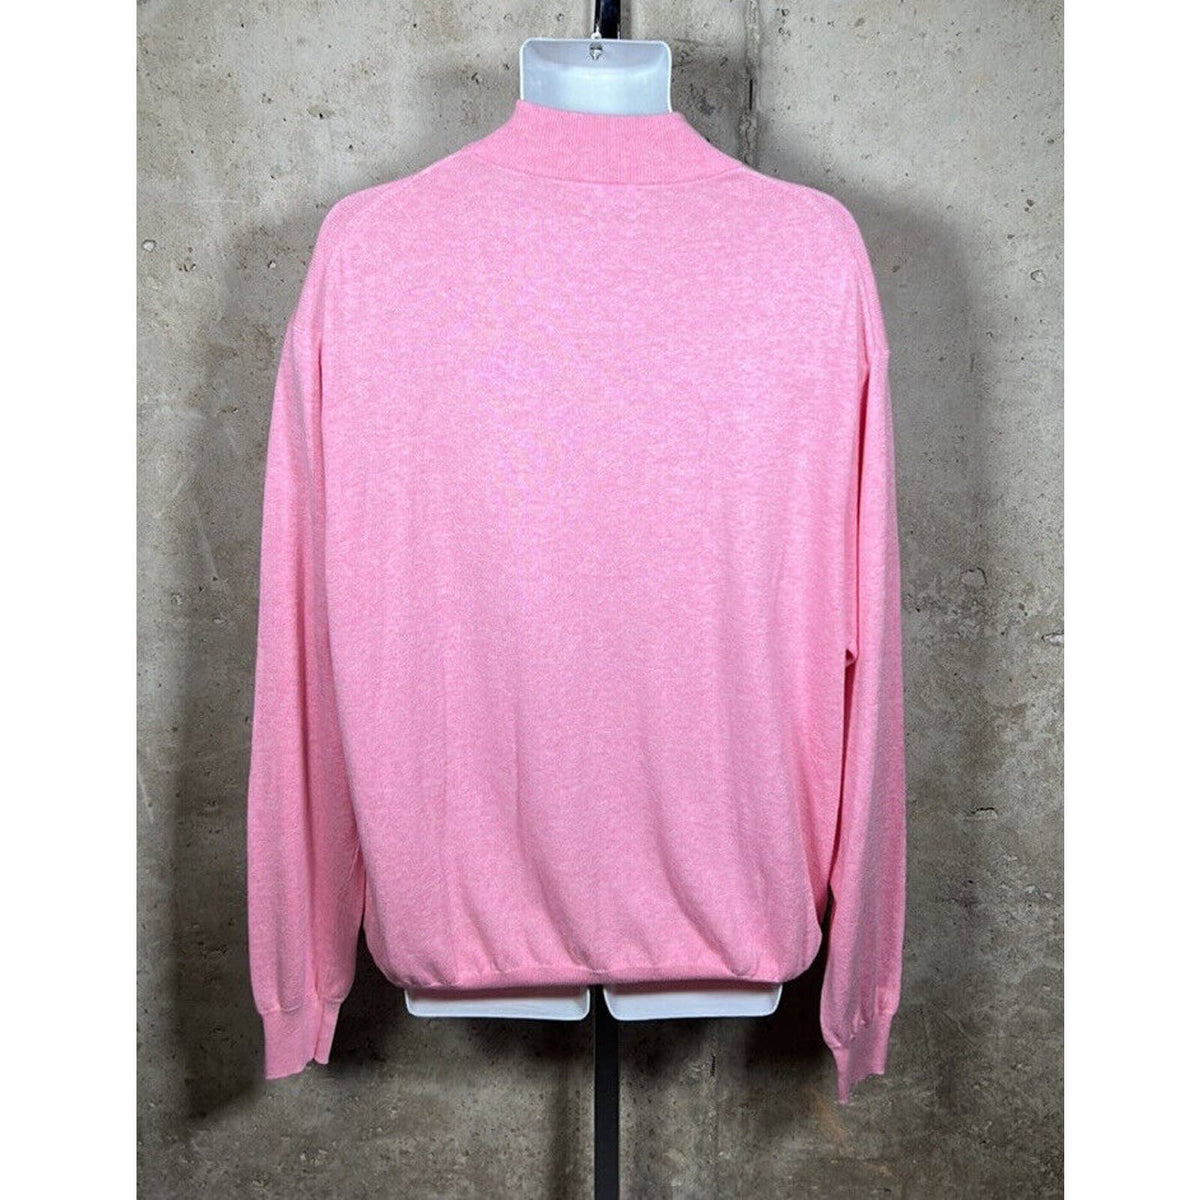 Peter Millar Crown Soft 1/4 Zip Pullover Light Pale Pink Sz. XL